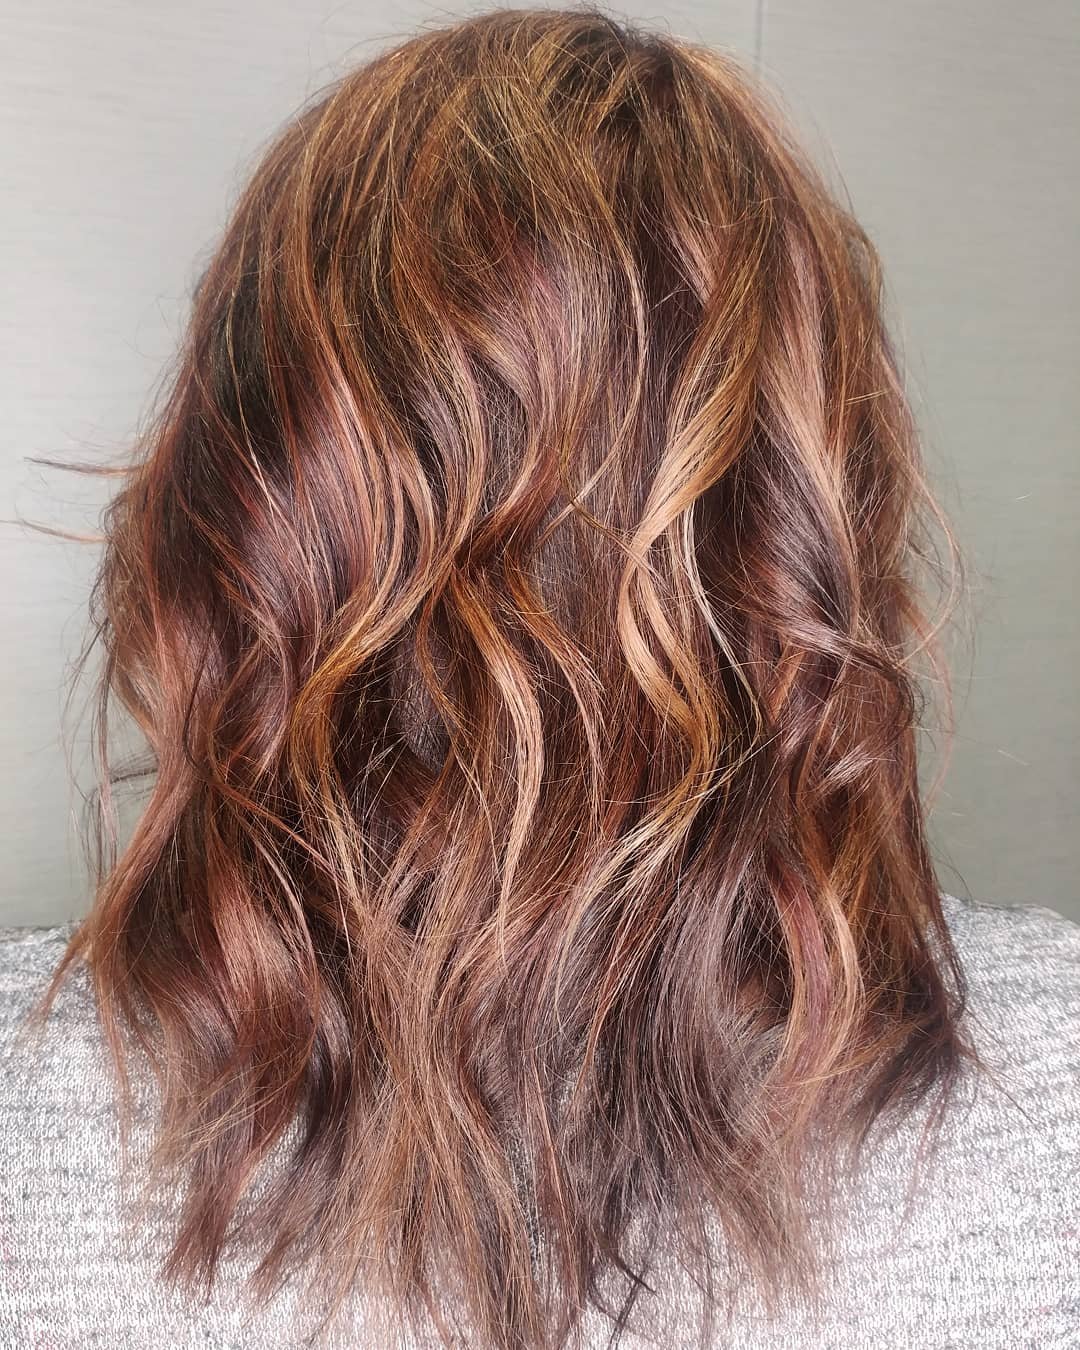 Cinnamon Hair Color With Caramel Highlights